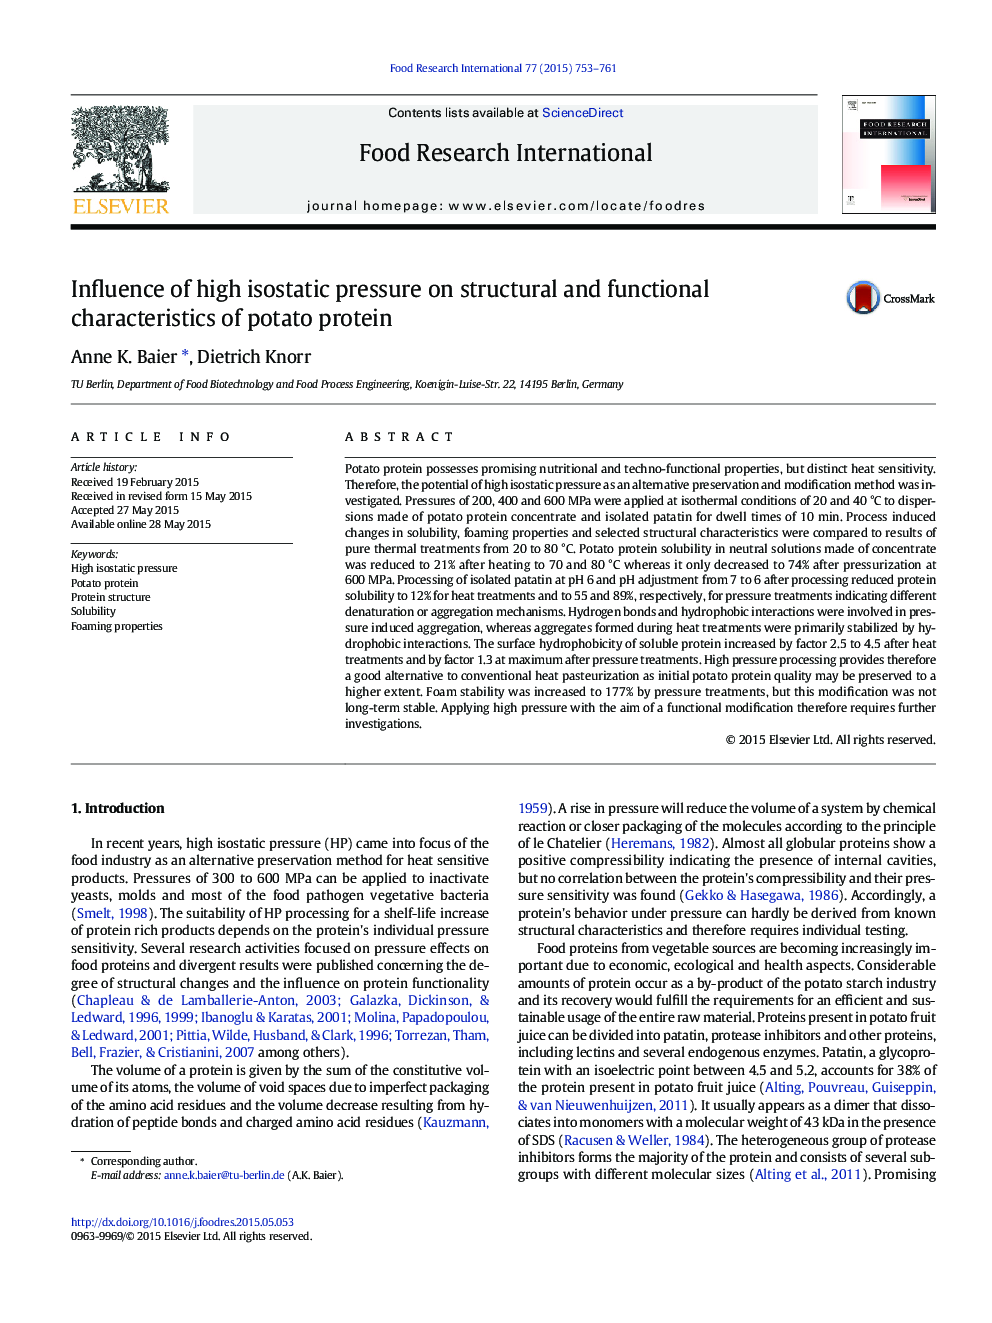 تأثیر فشار بالا ایزواستاتیک بر ویژگی های ساختاری و عملکردی پروتئین سیب زمینی 